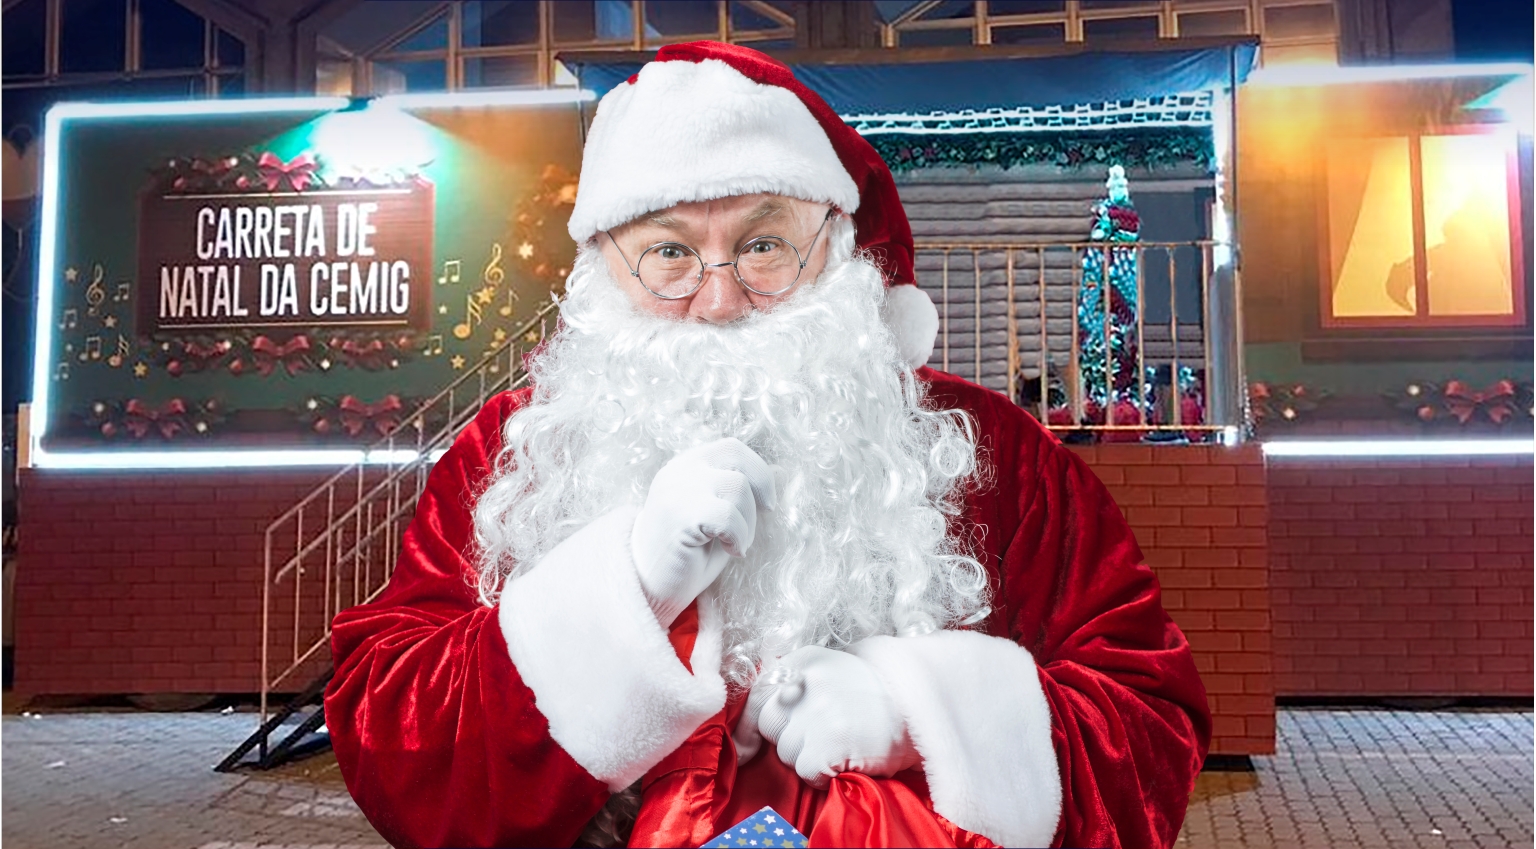 Prefeitura Municipal de Itapecerica - MG - Fotos com o Papai Noel tiradas  na Carreta de Natal da Cemig no dia 14 de dezembro de 2018